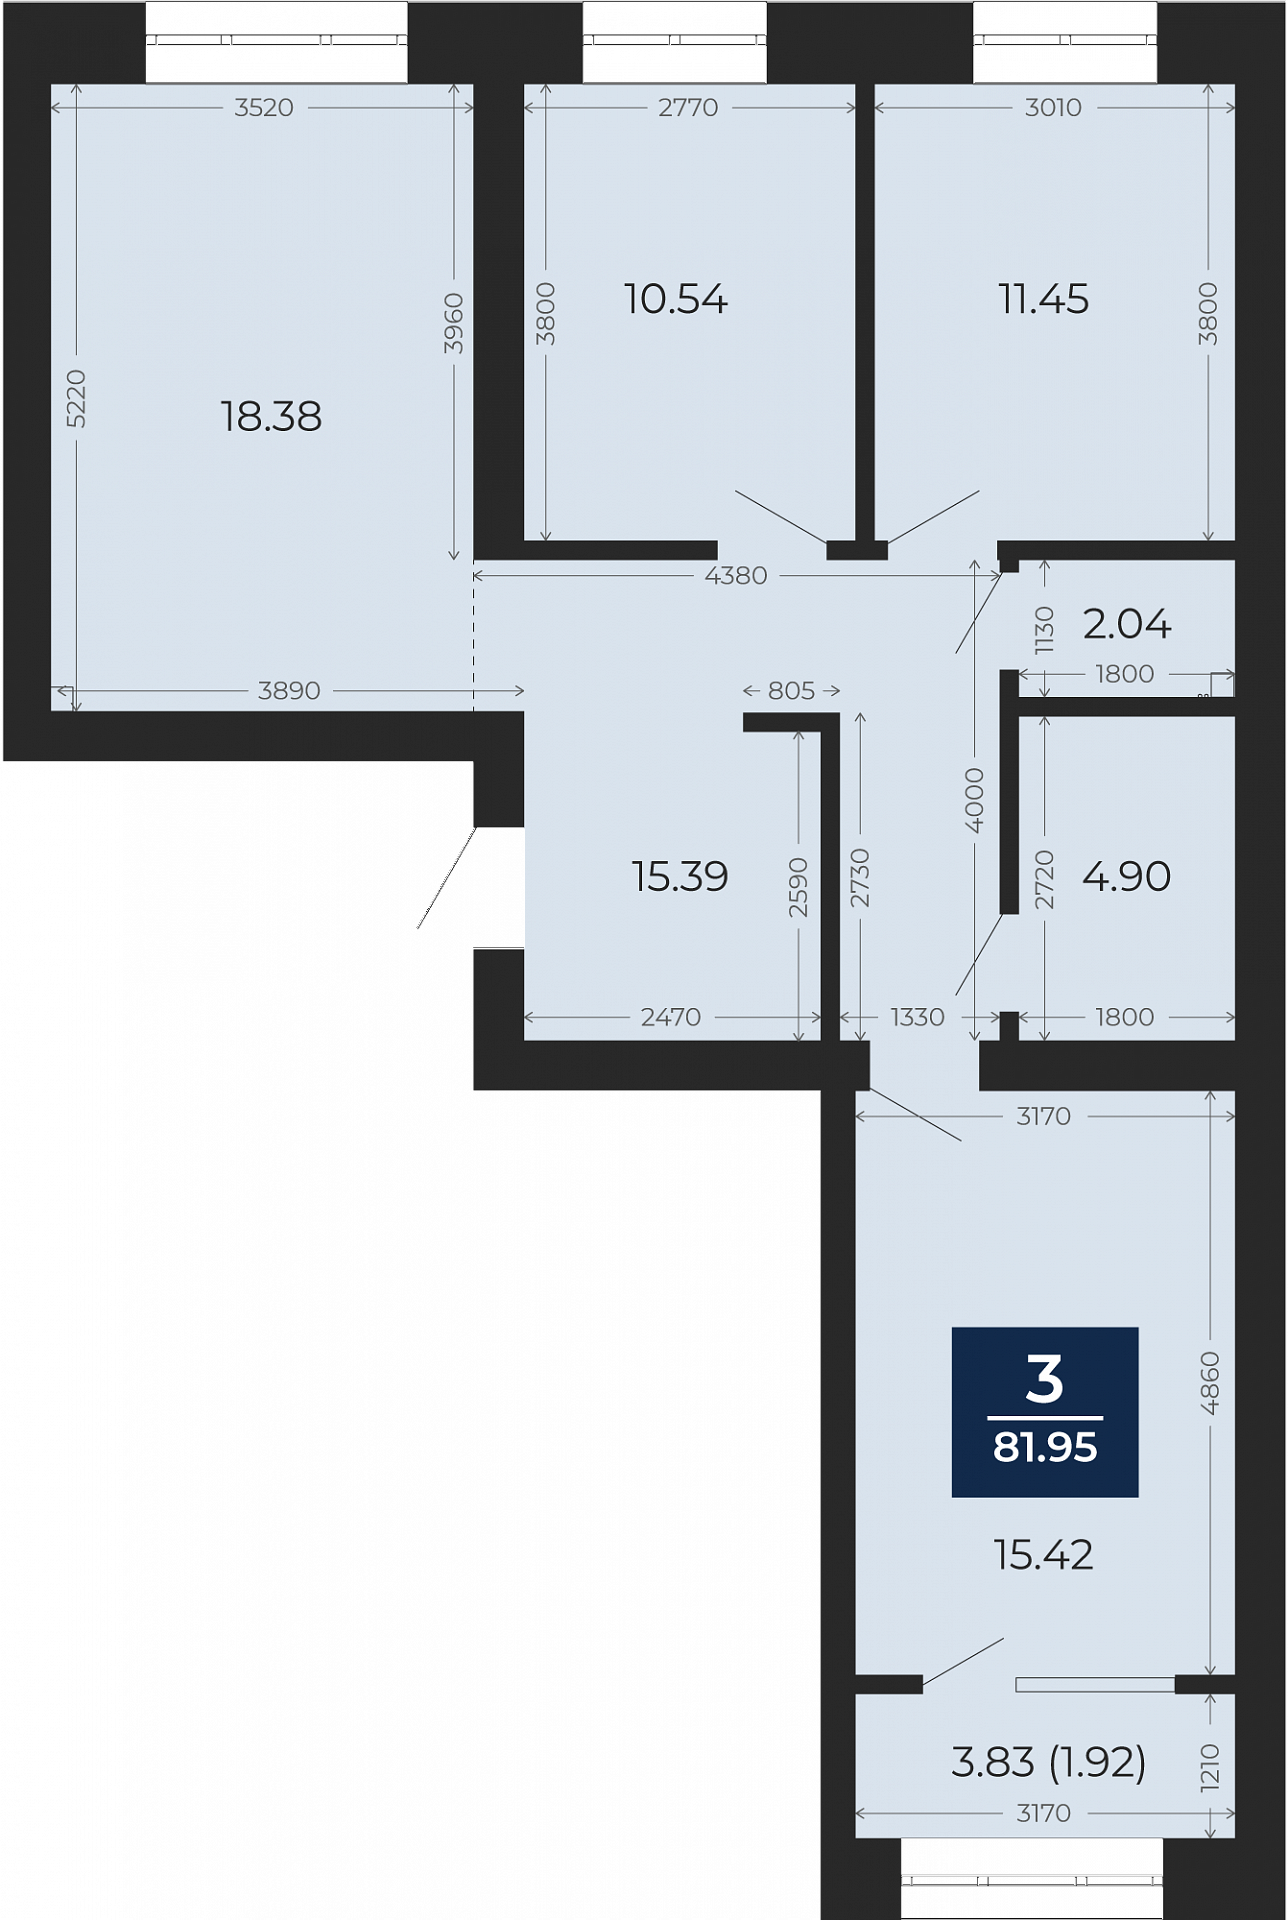 Квартира № 112, 3-комнатная, 81.95 кв. м, 7 этаж